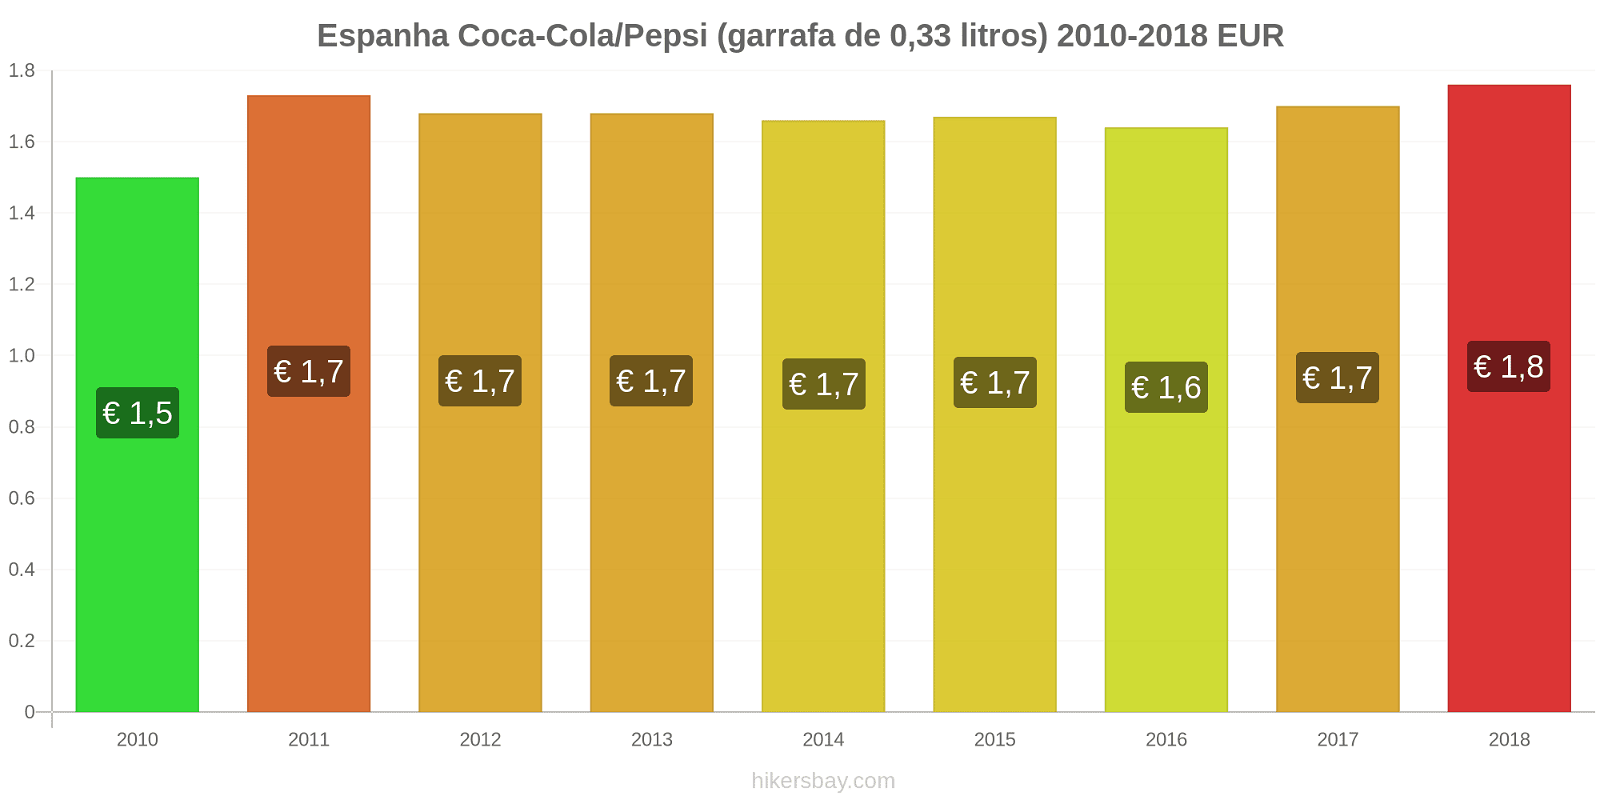 Espanha mudanças de preços Coca-Cola/Pepsi (garrafa de 0.33 litros) hikersbay.com